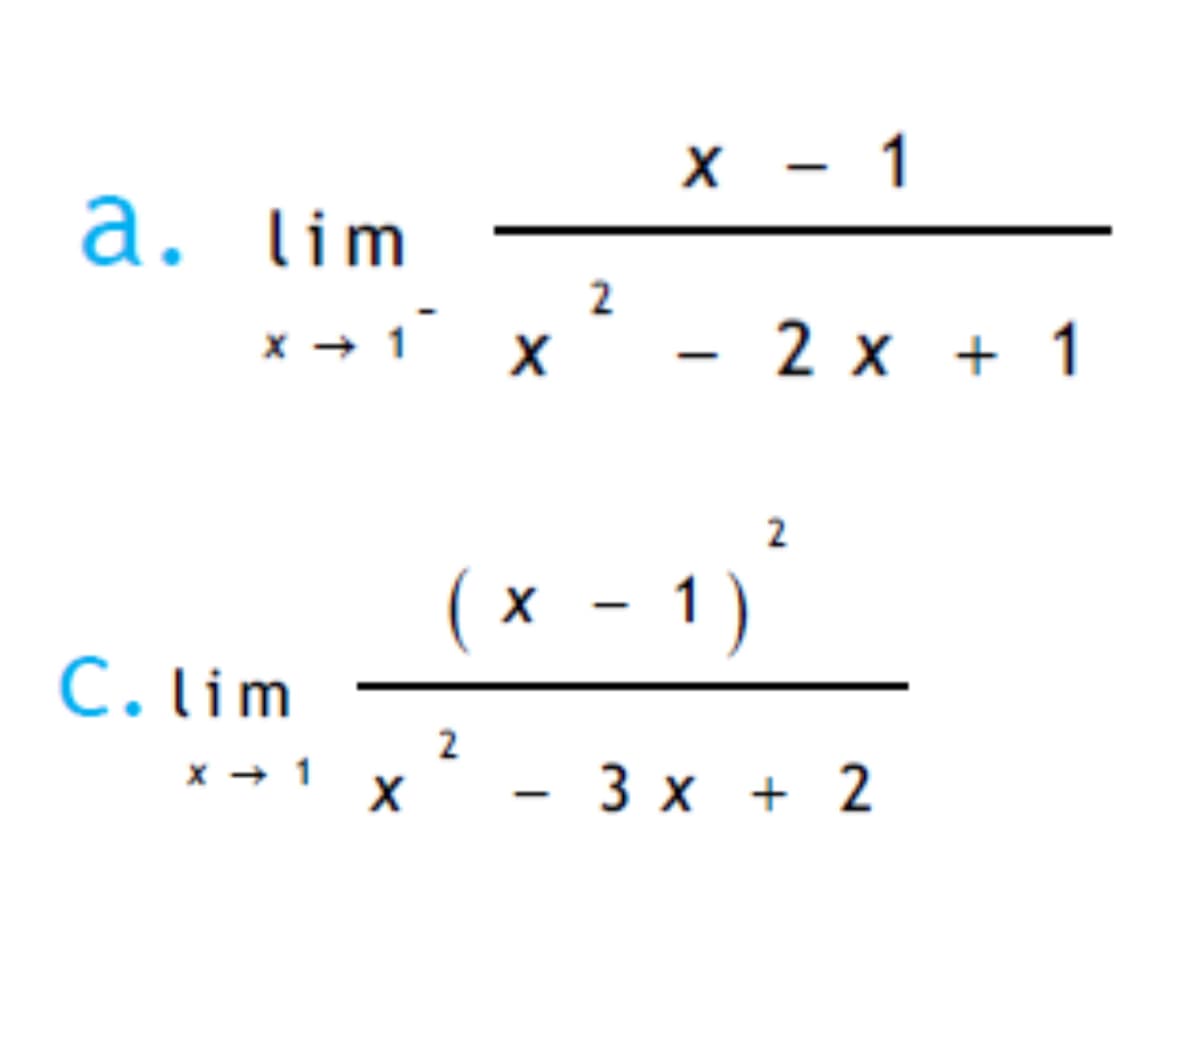 a. lim
C. lim
2
x → → 1
X - 1
- 2x + 1
2
( x − 1 )
x-1)
-
2
- 3 x + 2